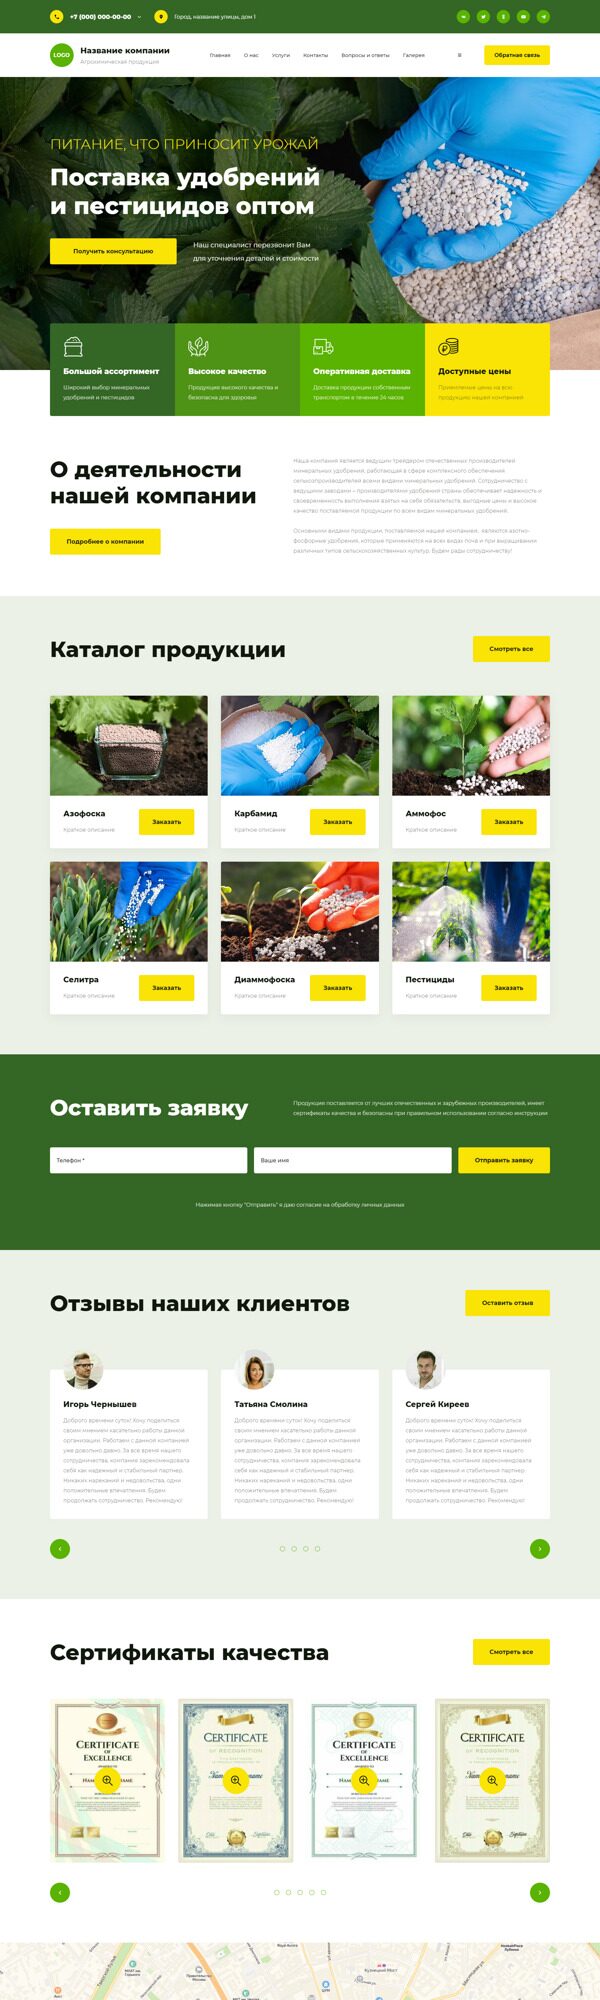 Готовый Сайт-Бизнес № 5985490 - Удобрения и агрохимические продукты (Десктопная версия)